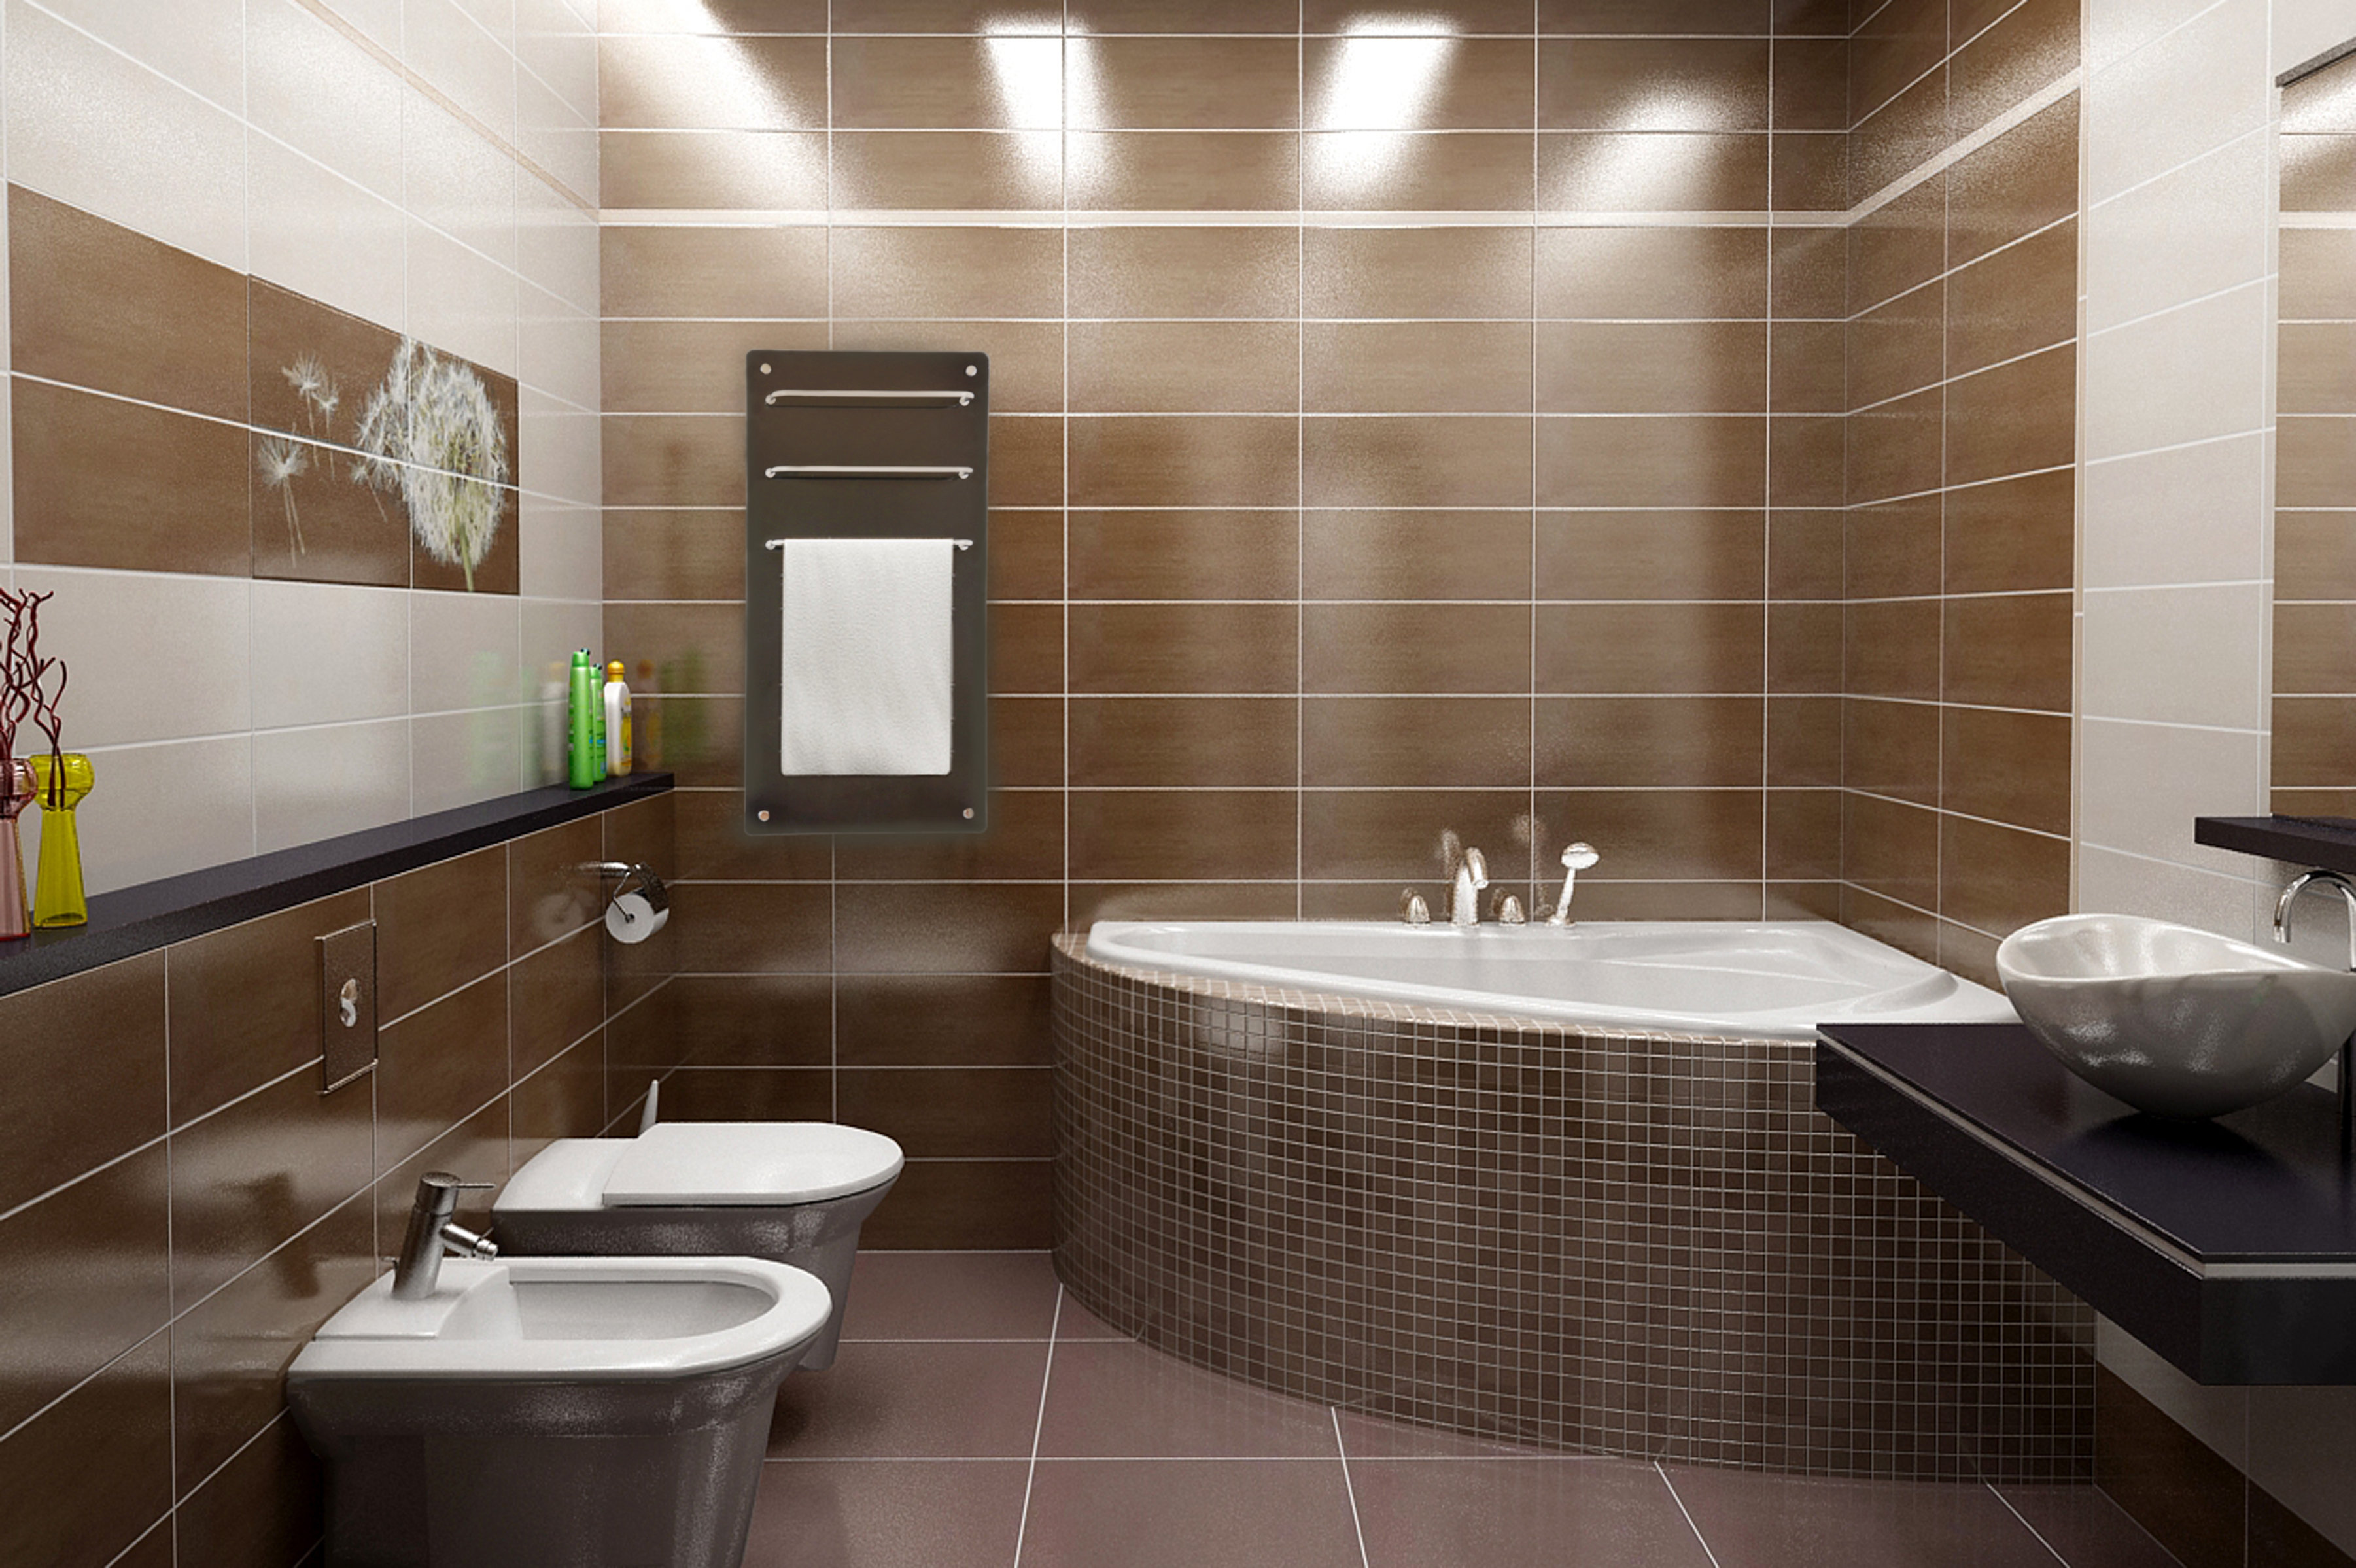 Ремонт дизайн ванной комнаты фото » Картинки и фотографии дизайна .